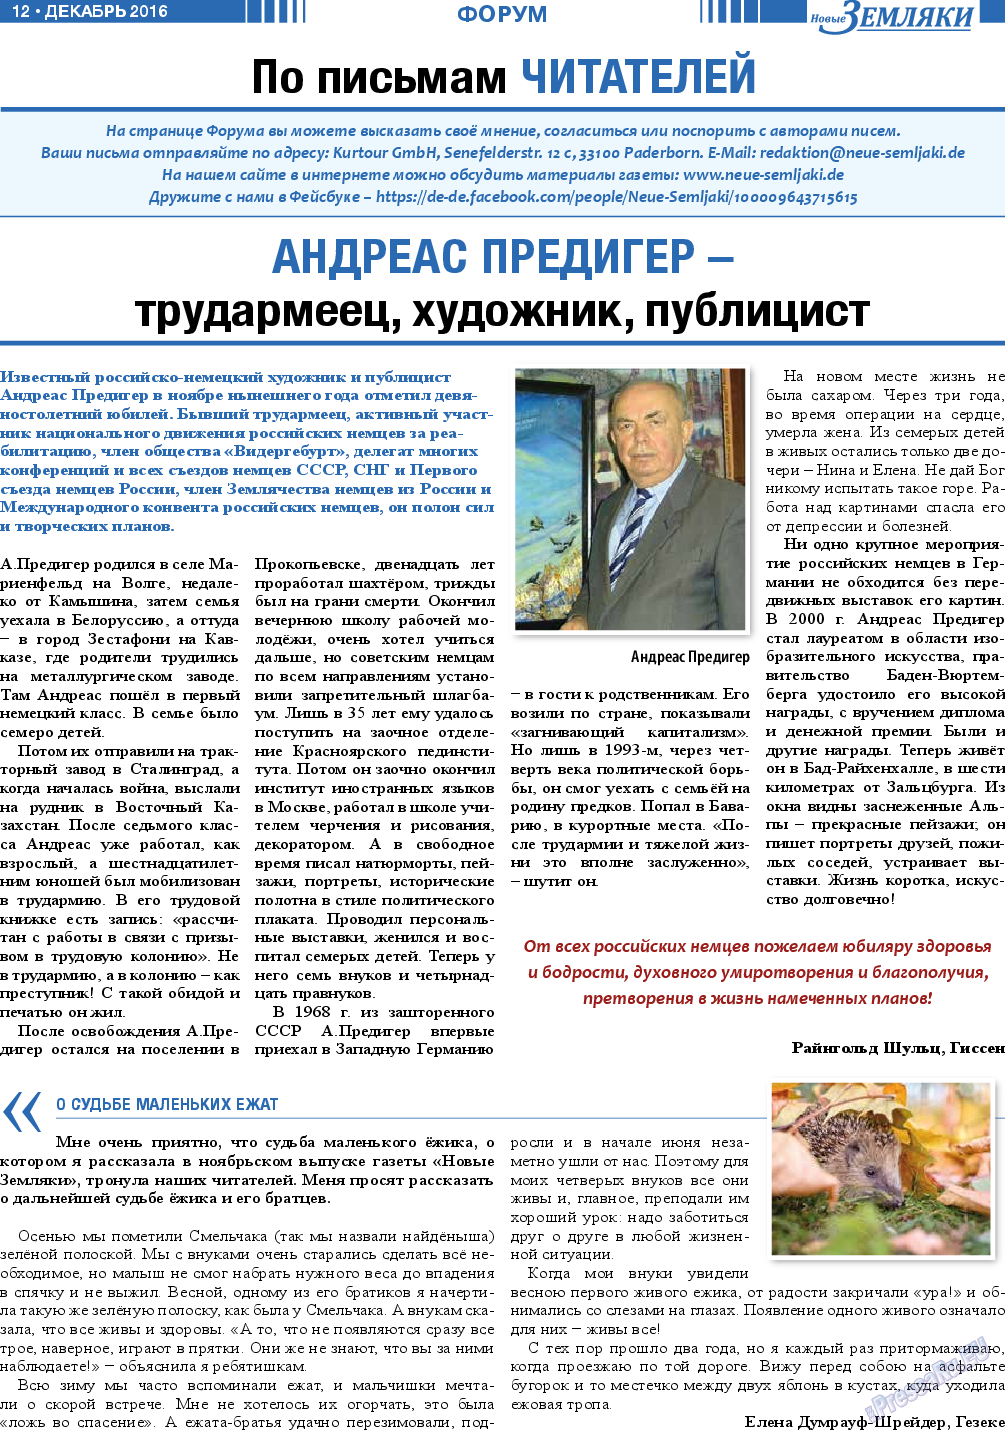 Новые Земляки, газета. 2016 №12 стр.12